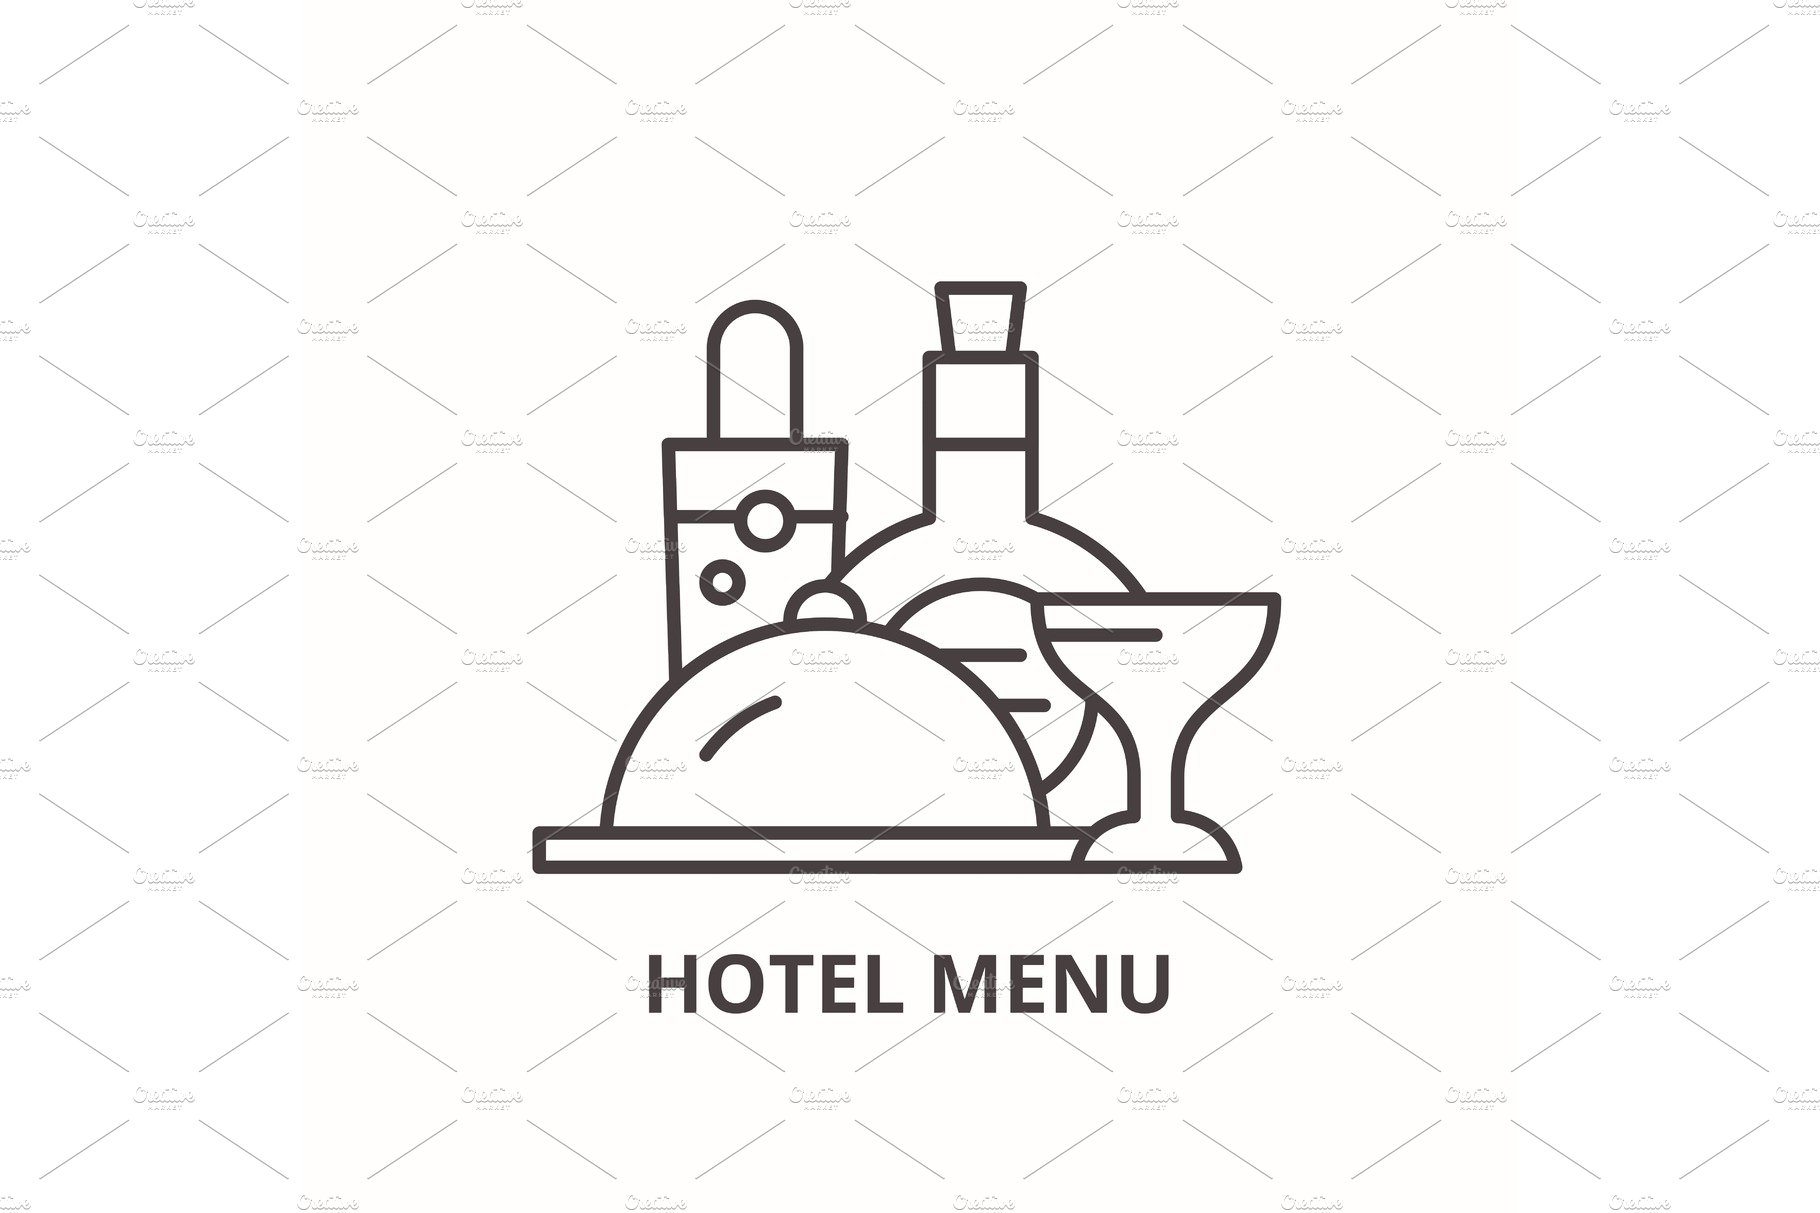 Hotel menu line icon concept. Hotel cover image.